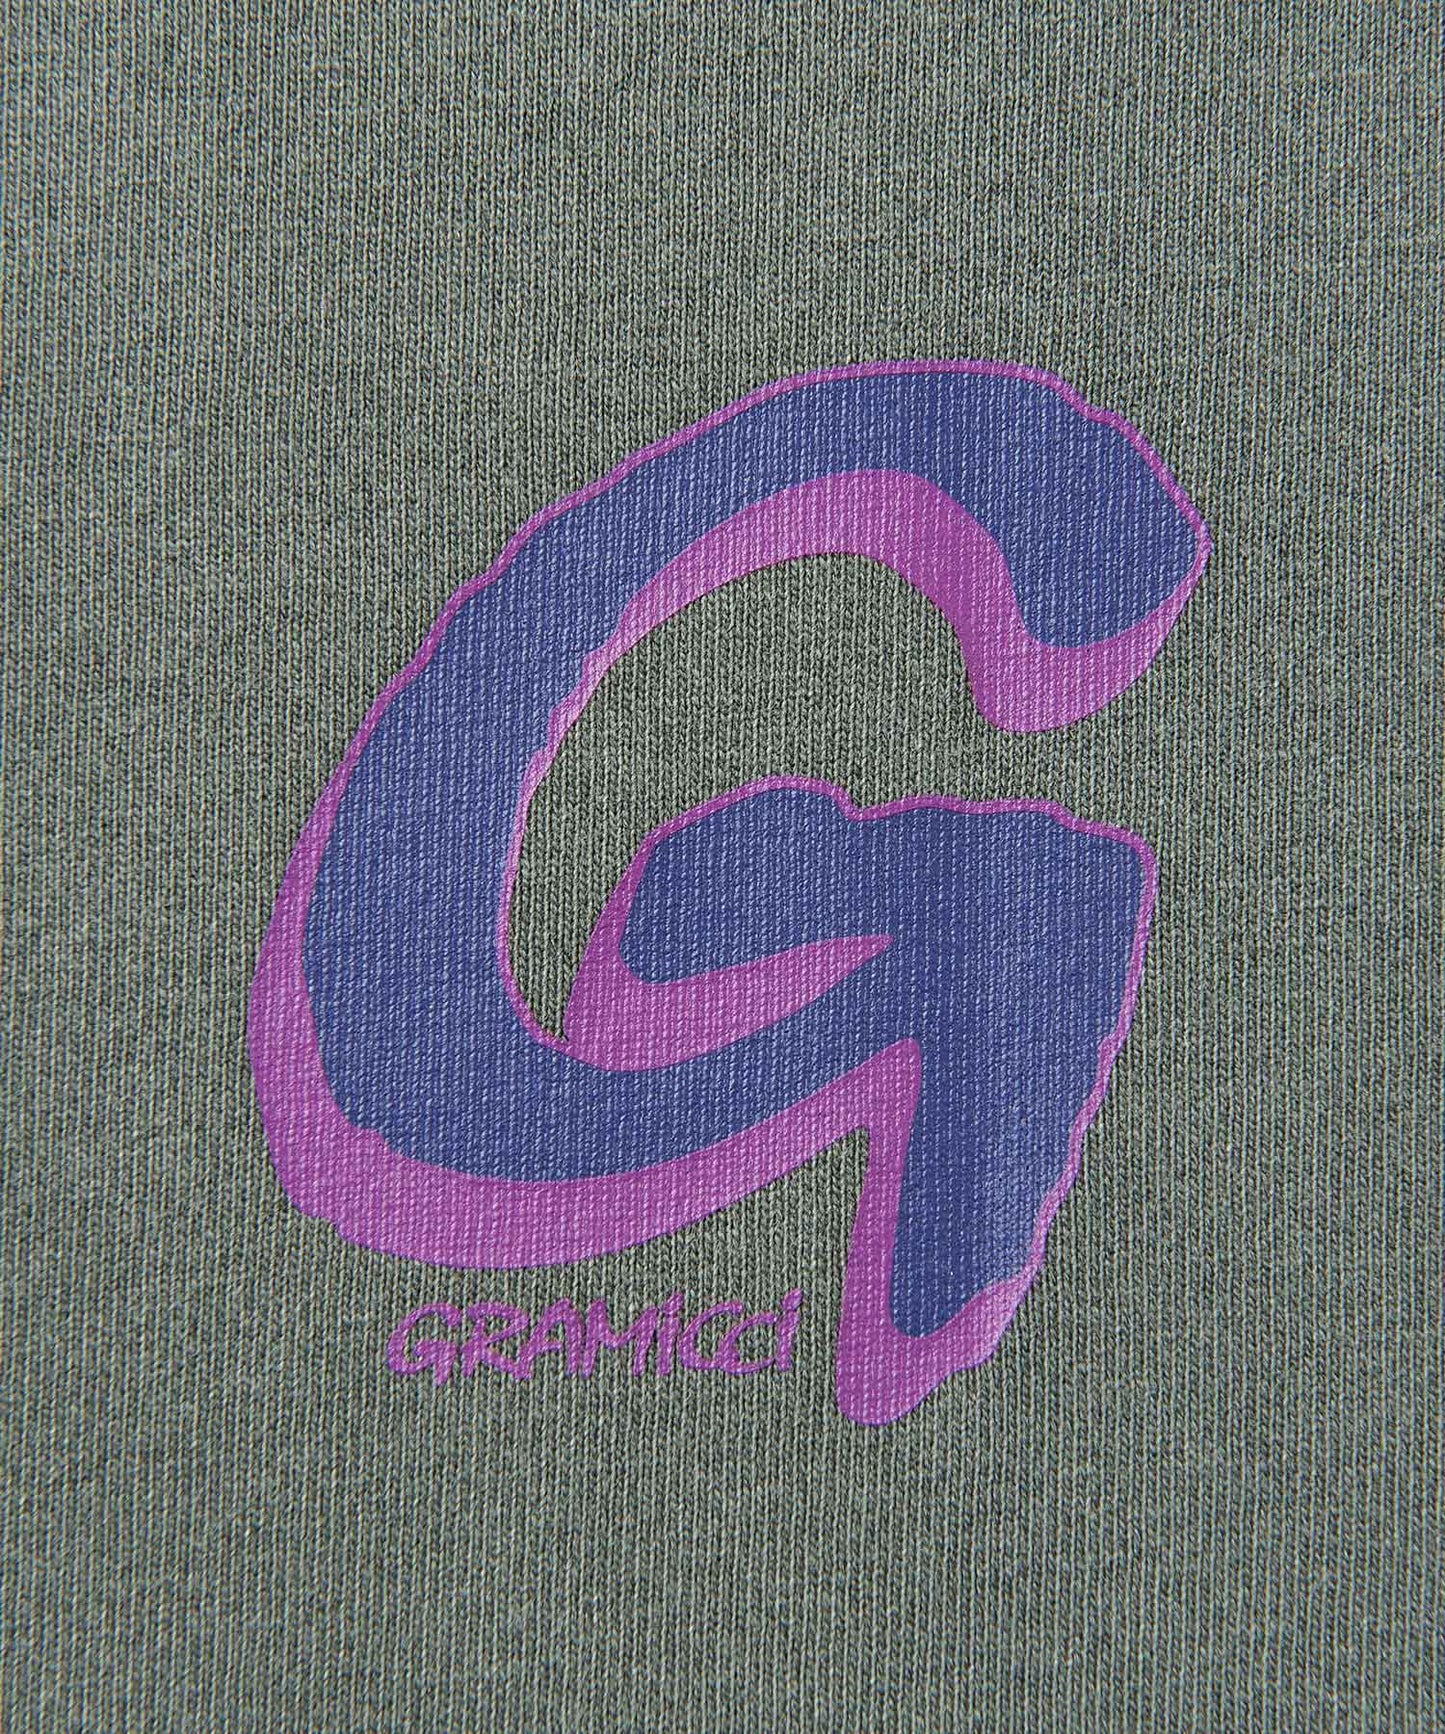 [GRAMICCI グラミチ] BIG G-LOGO TEE | ビッグG-ロゴTシャツ